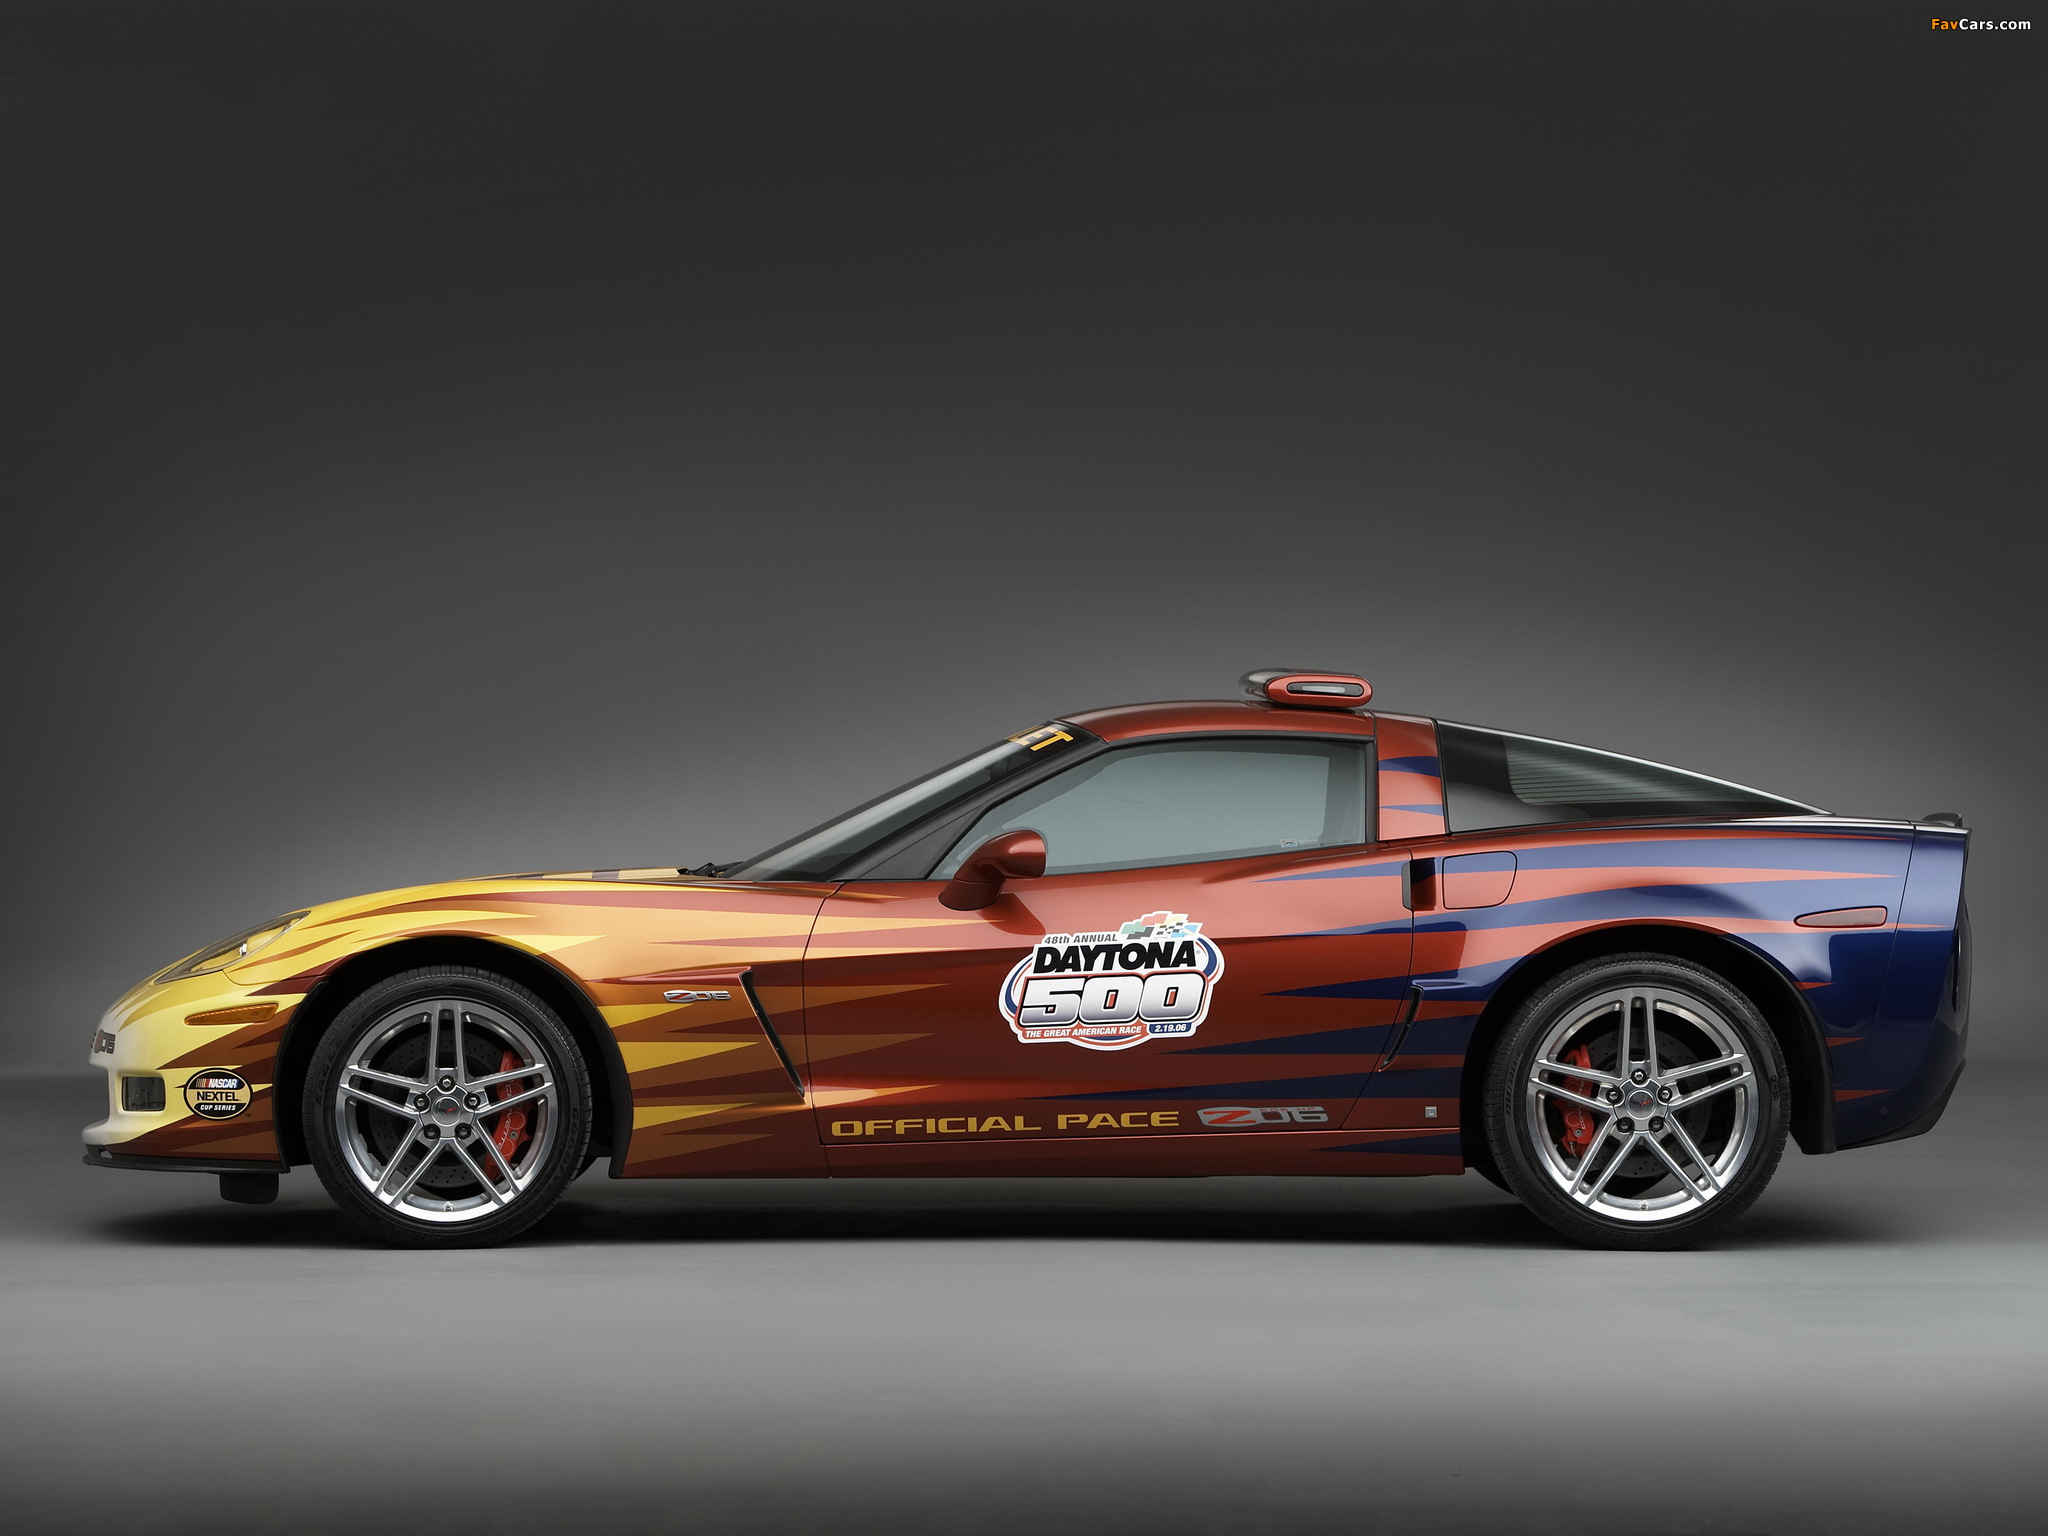 Corvette Z06 Daytona 500 Pace Car (C6) 2006 pictures (2048 x 1536)